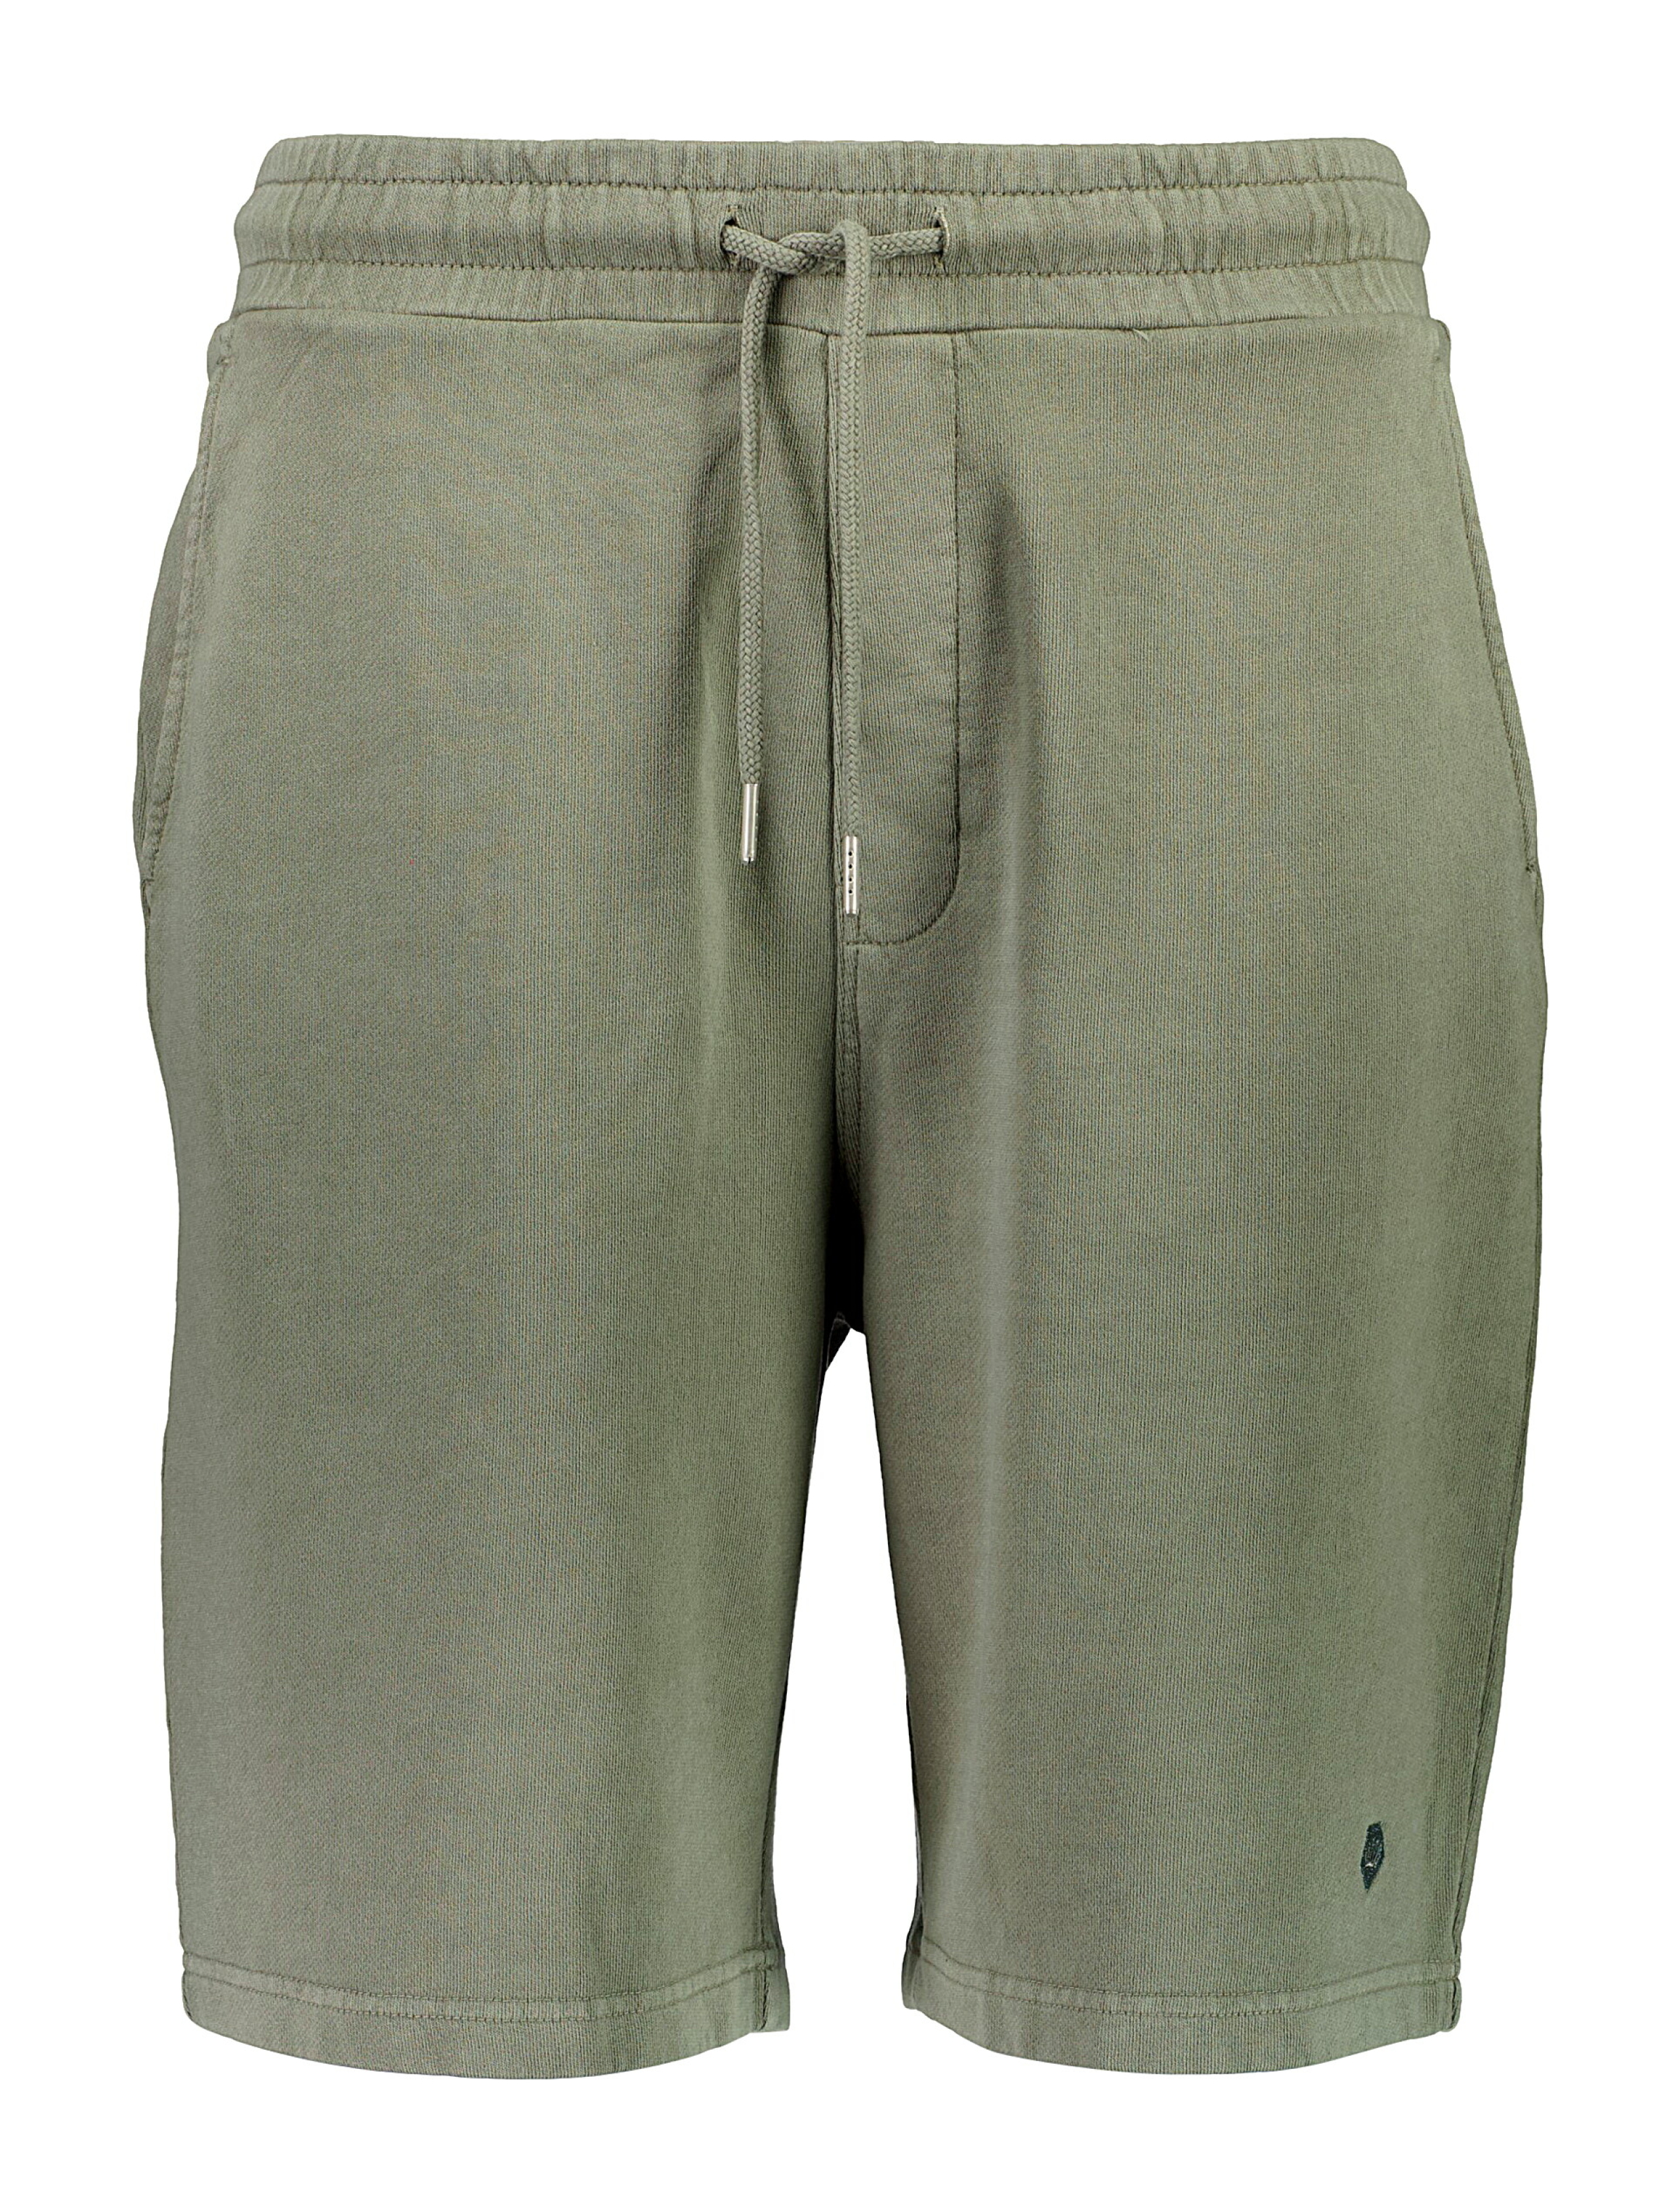 Junk de Luxe Casual shorts grå / dusty grey